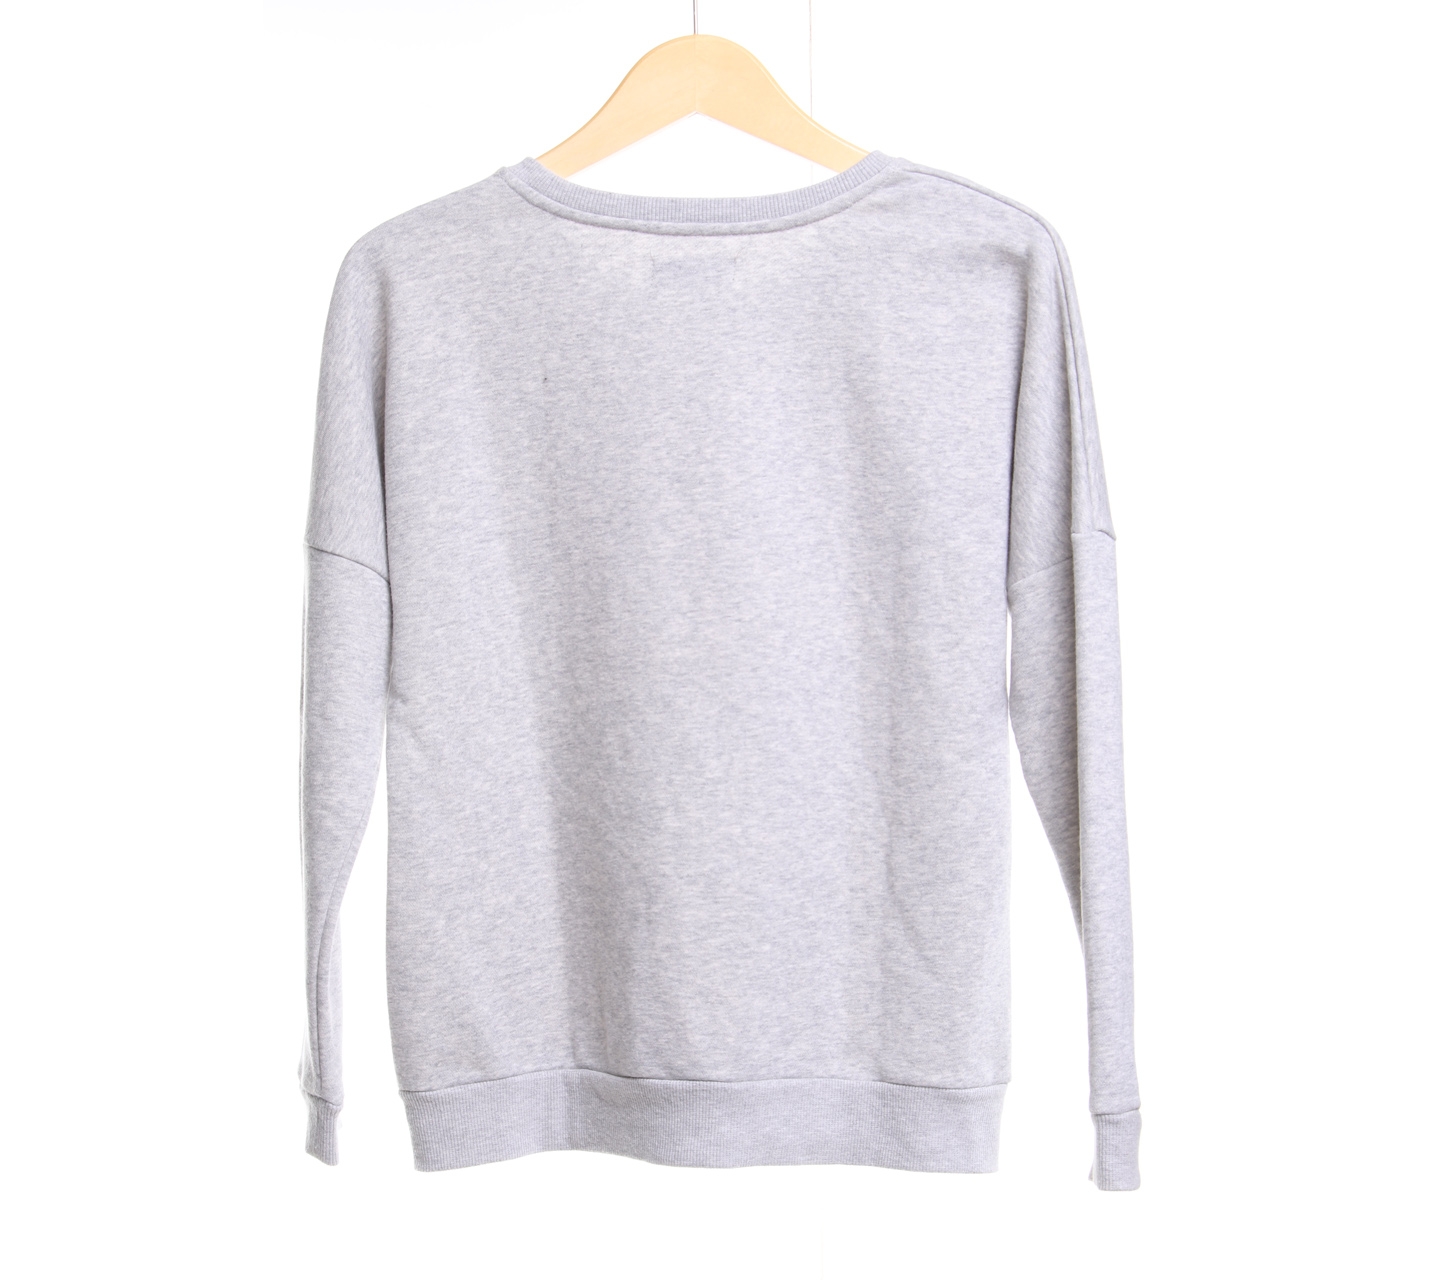 Padiniauthentics Grey Sweater